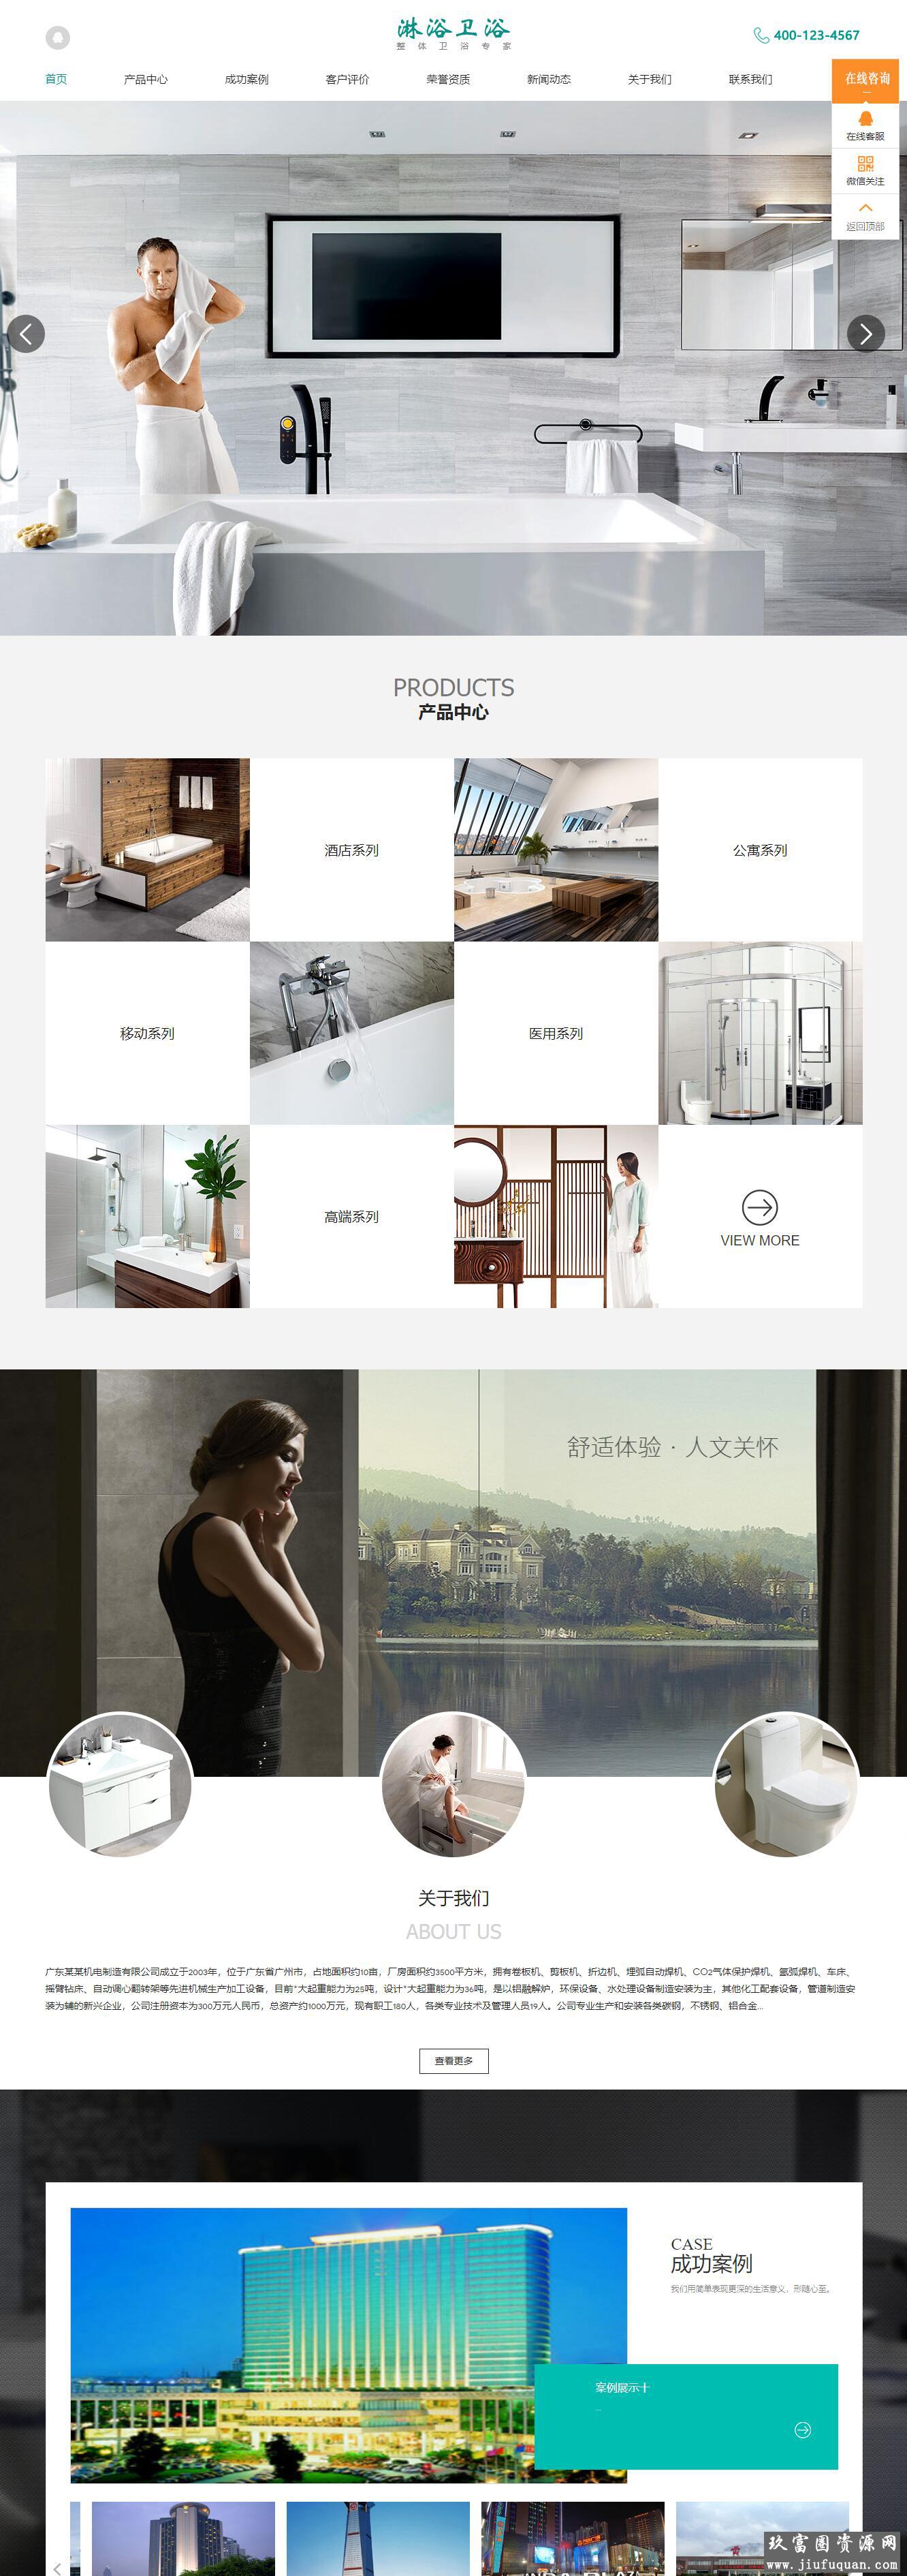 家居卫浴设计类淋浴卫浴网站pbootcms模板